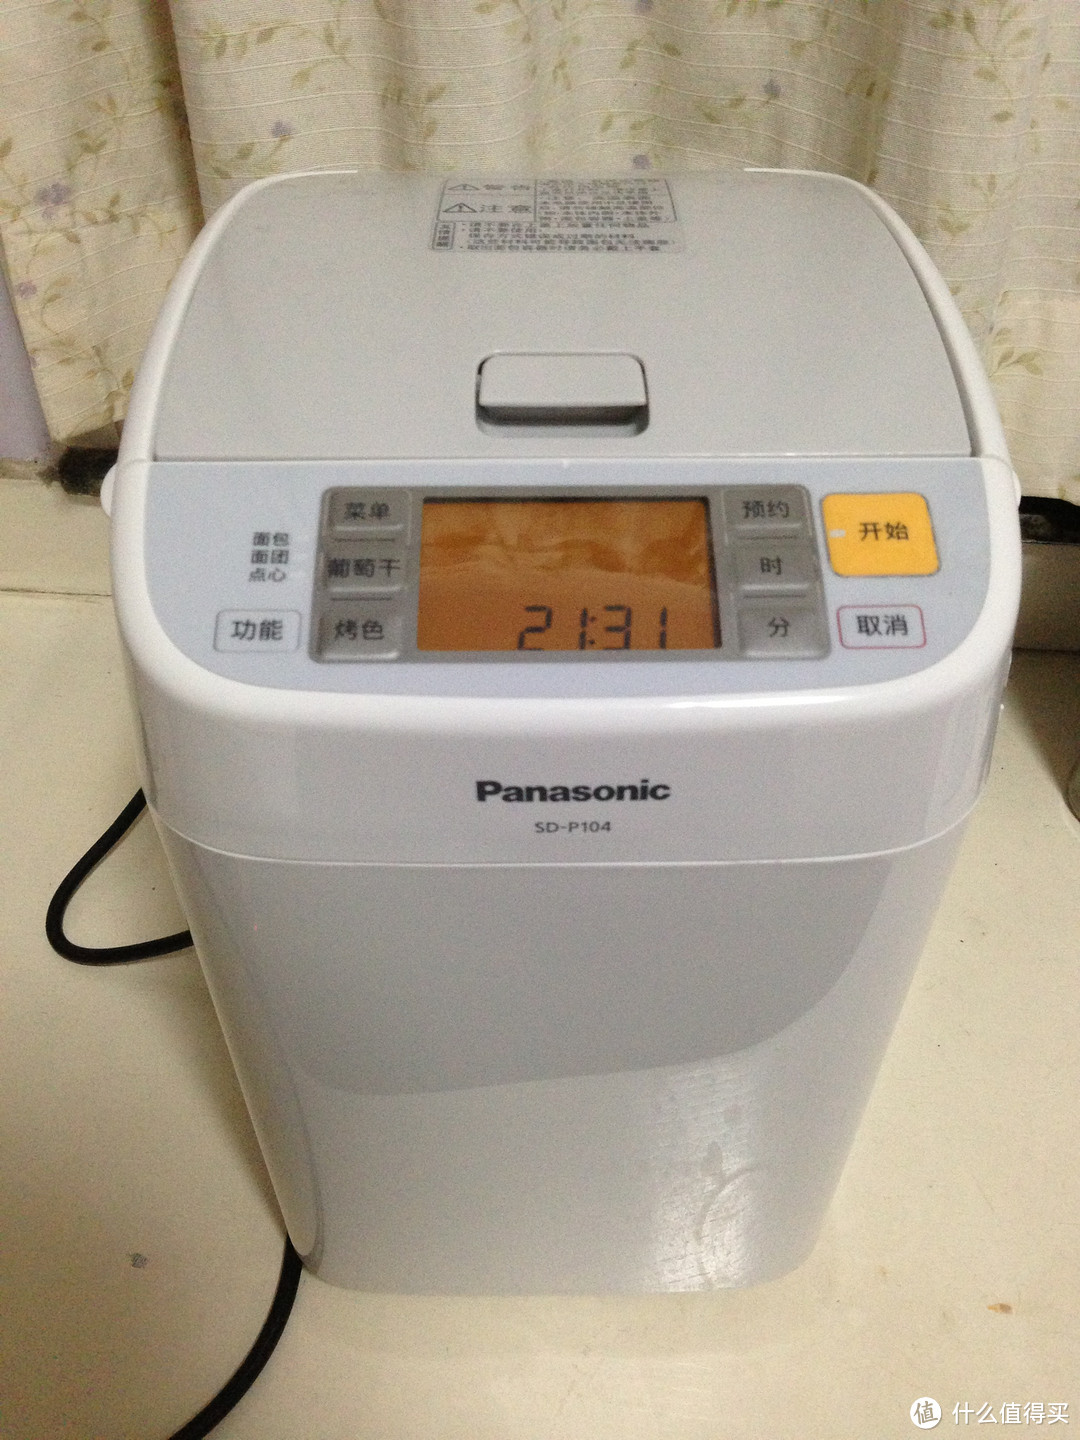 Panasonic 松下 全自动面包机 SD-P104 使用初体验——抹茶葡萄干面包